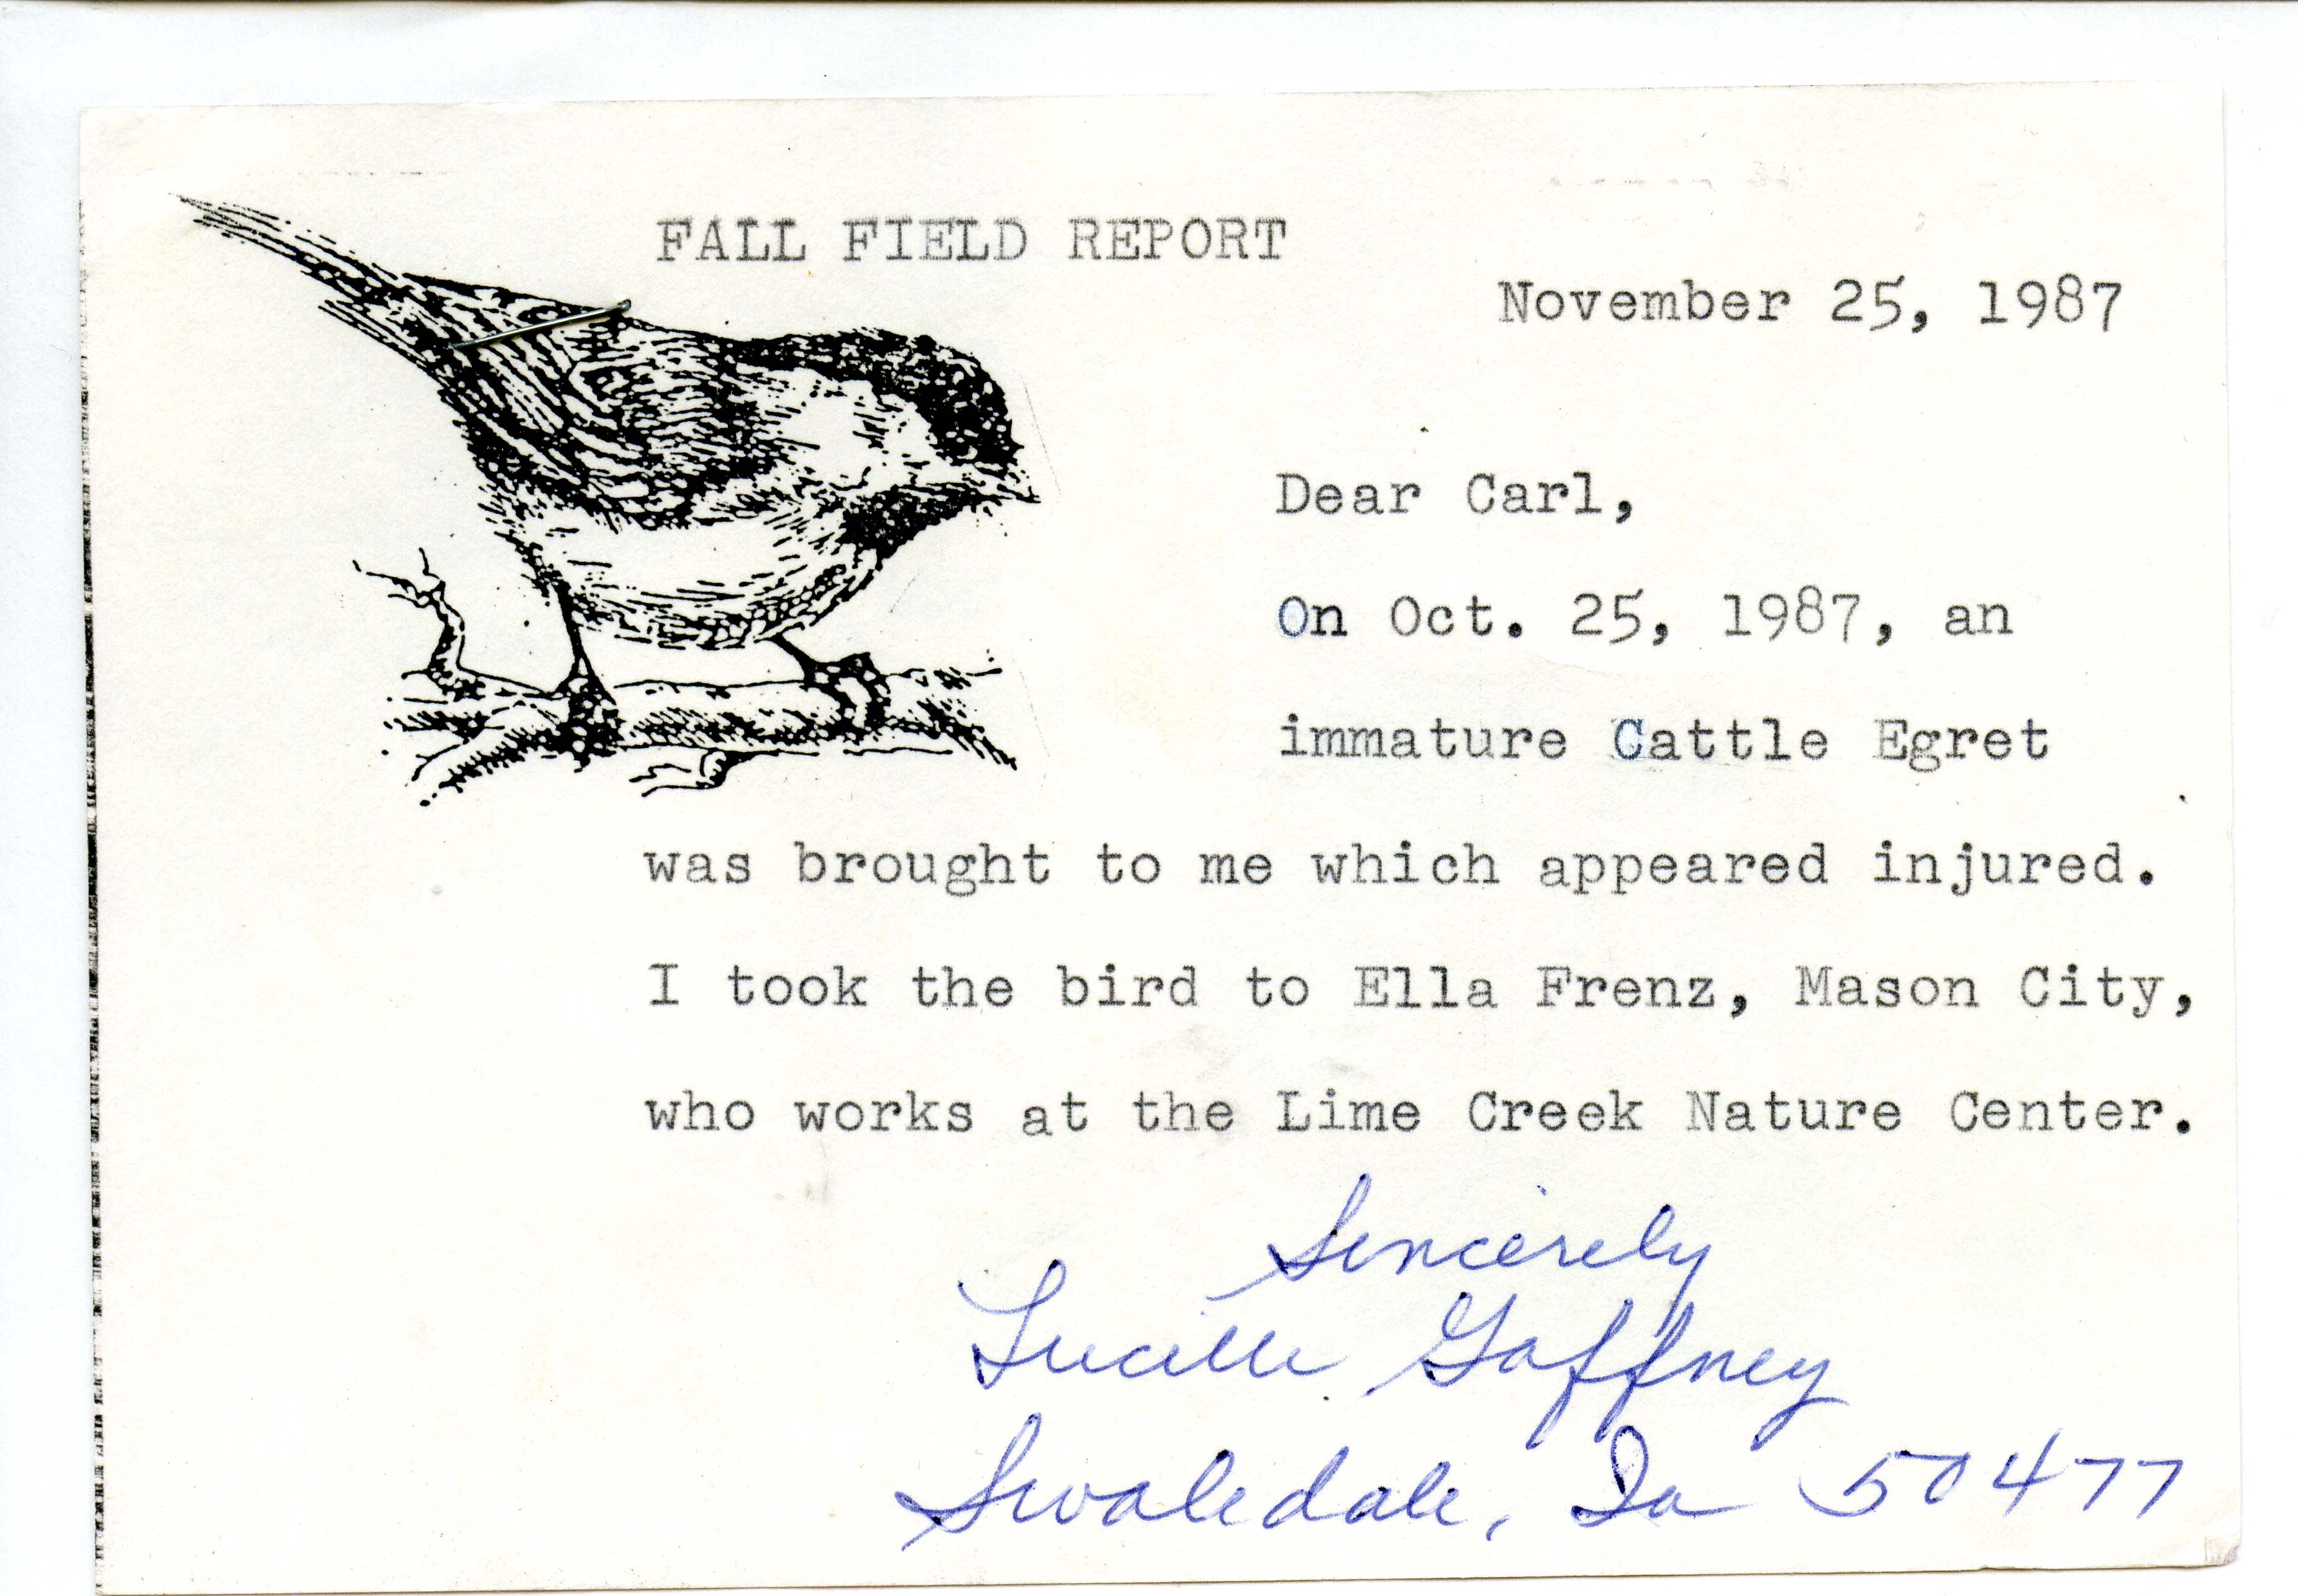 Lucille M. Gaffney letter to Carl J. Bendorf regarding an injured Cattle Egret, November 25, 1987